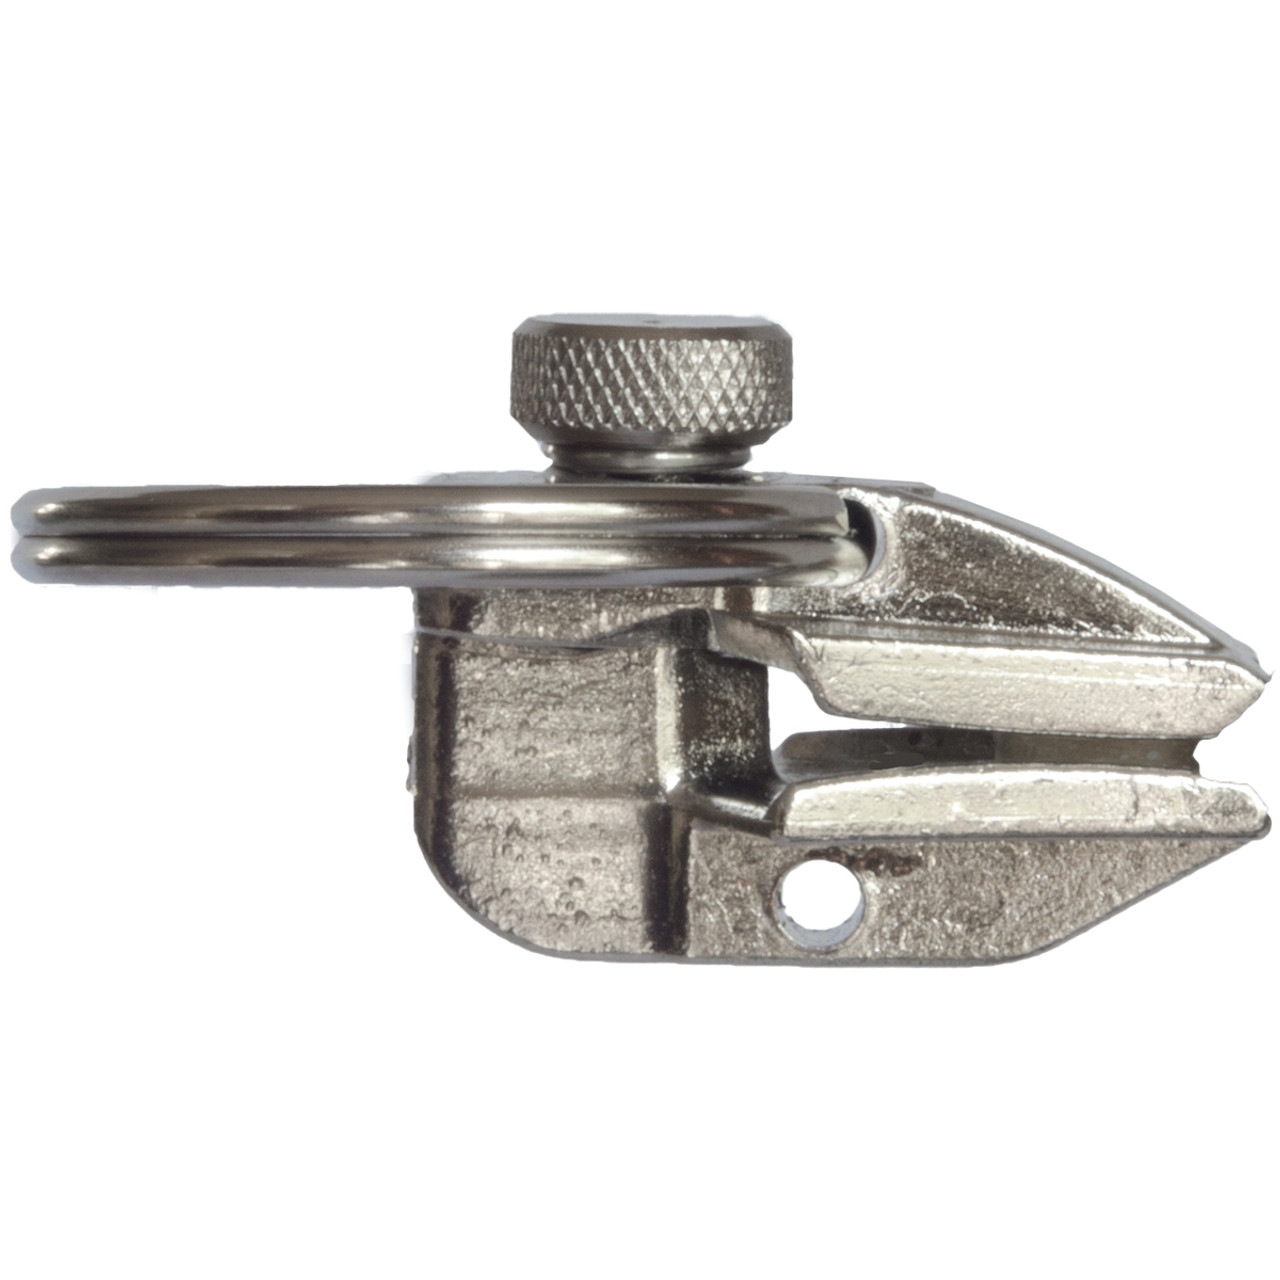 Fixnzip Zipper Repair Medium Nickel